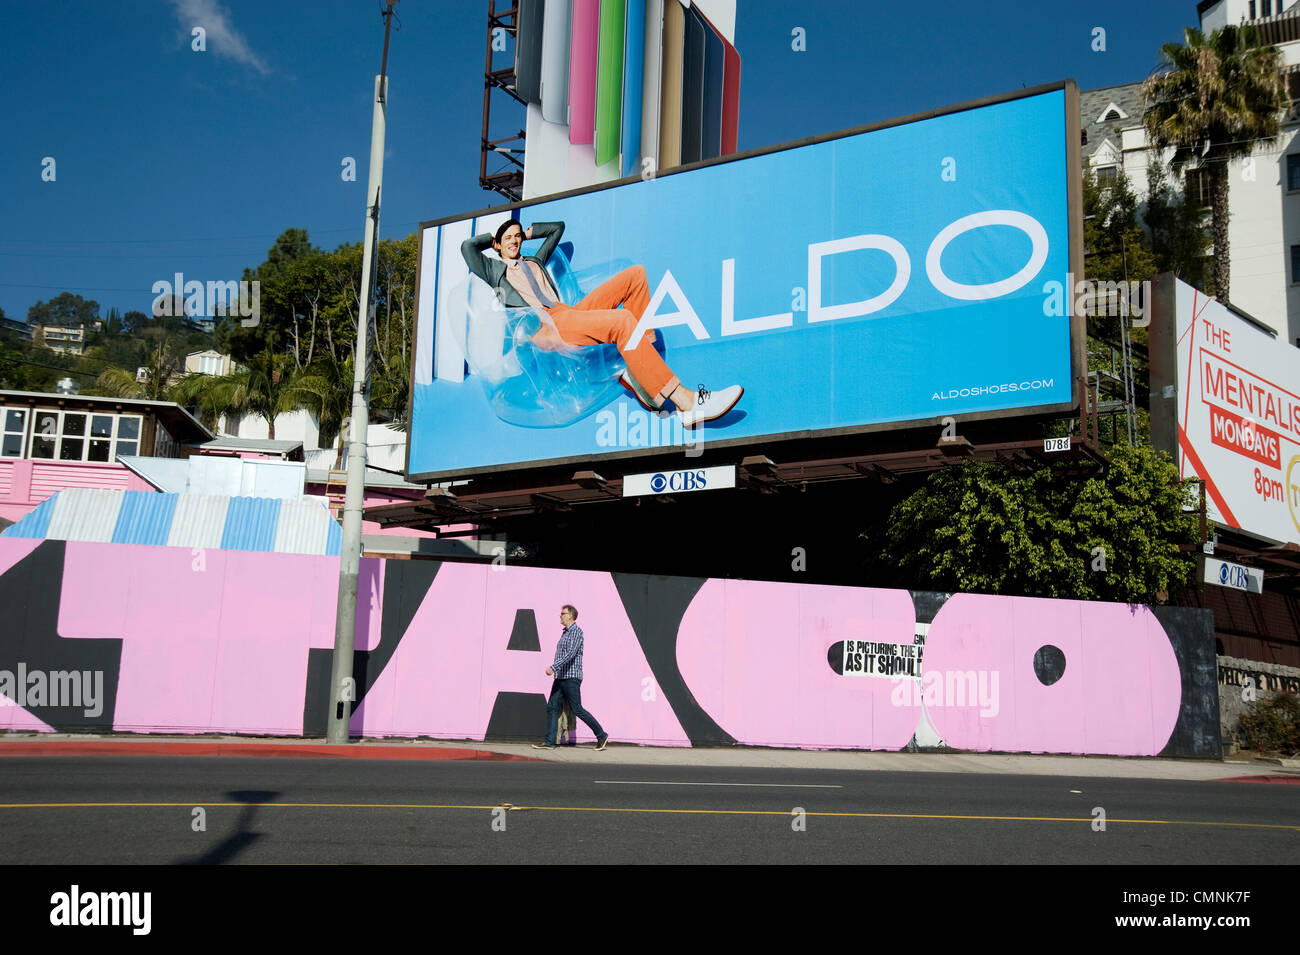 Sunset Strip, à West Hollywood avec zone piétonne et de l'affichage pour les chaussures Aldo Banque D'Images